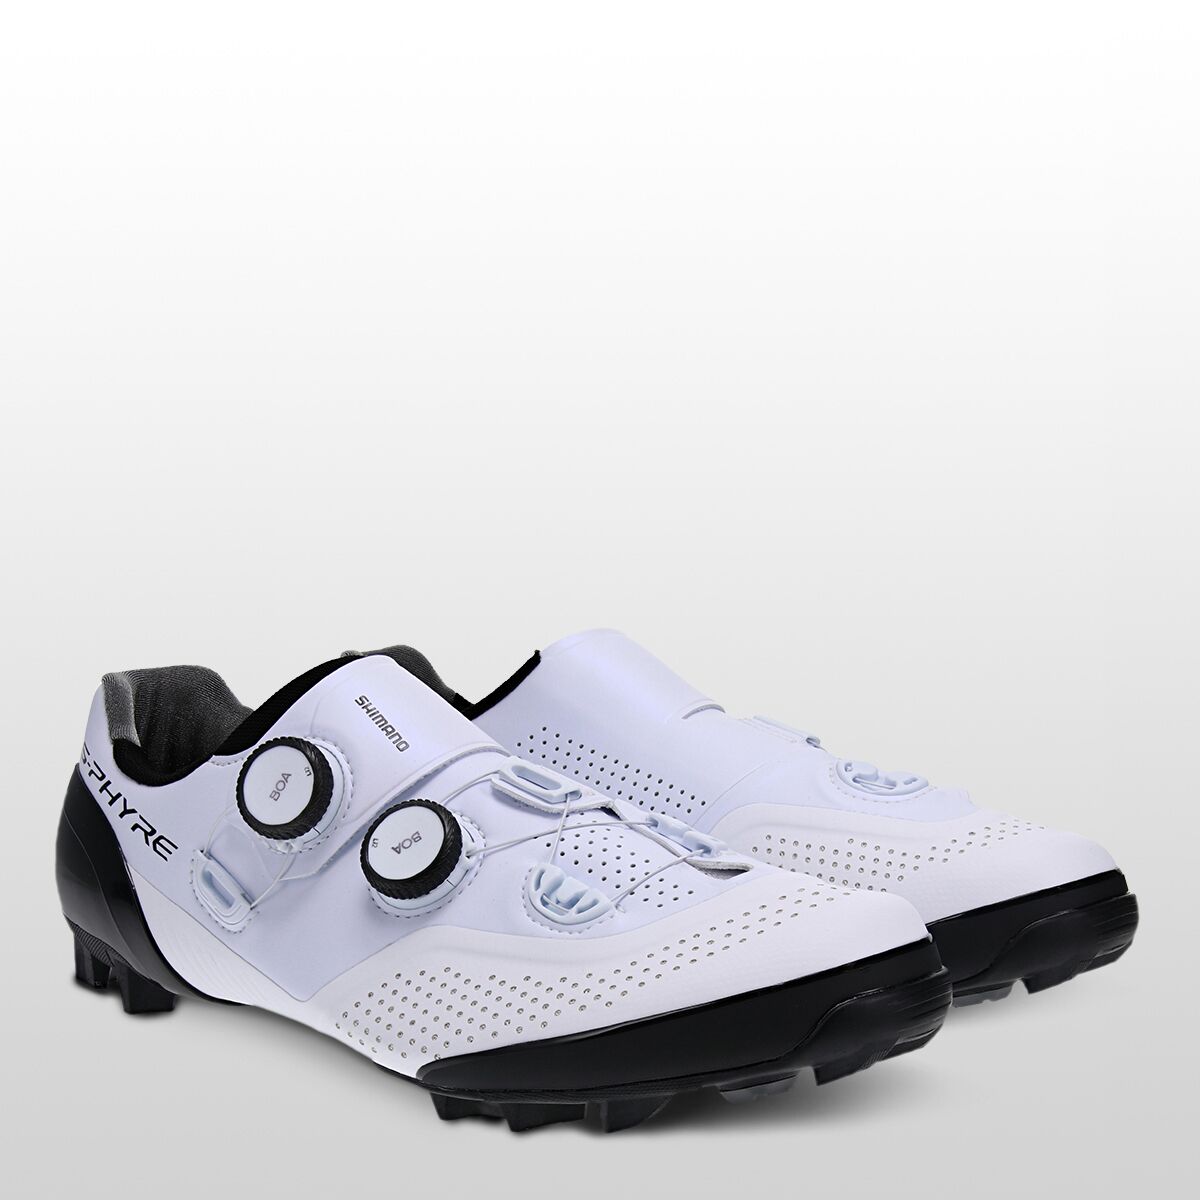 新品送料無料新品送料無料(取寄) シマノ メンズ XC902 S-ファイア サイクリング シュー メンズ Shimano Men XC902  S-PHYRE Cycling Shoe Men's White サイクリングシューズ